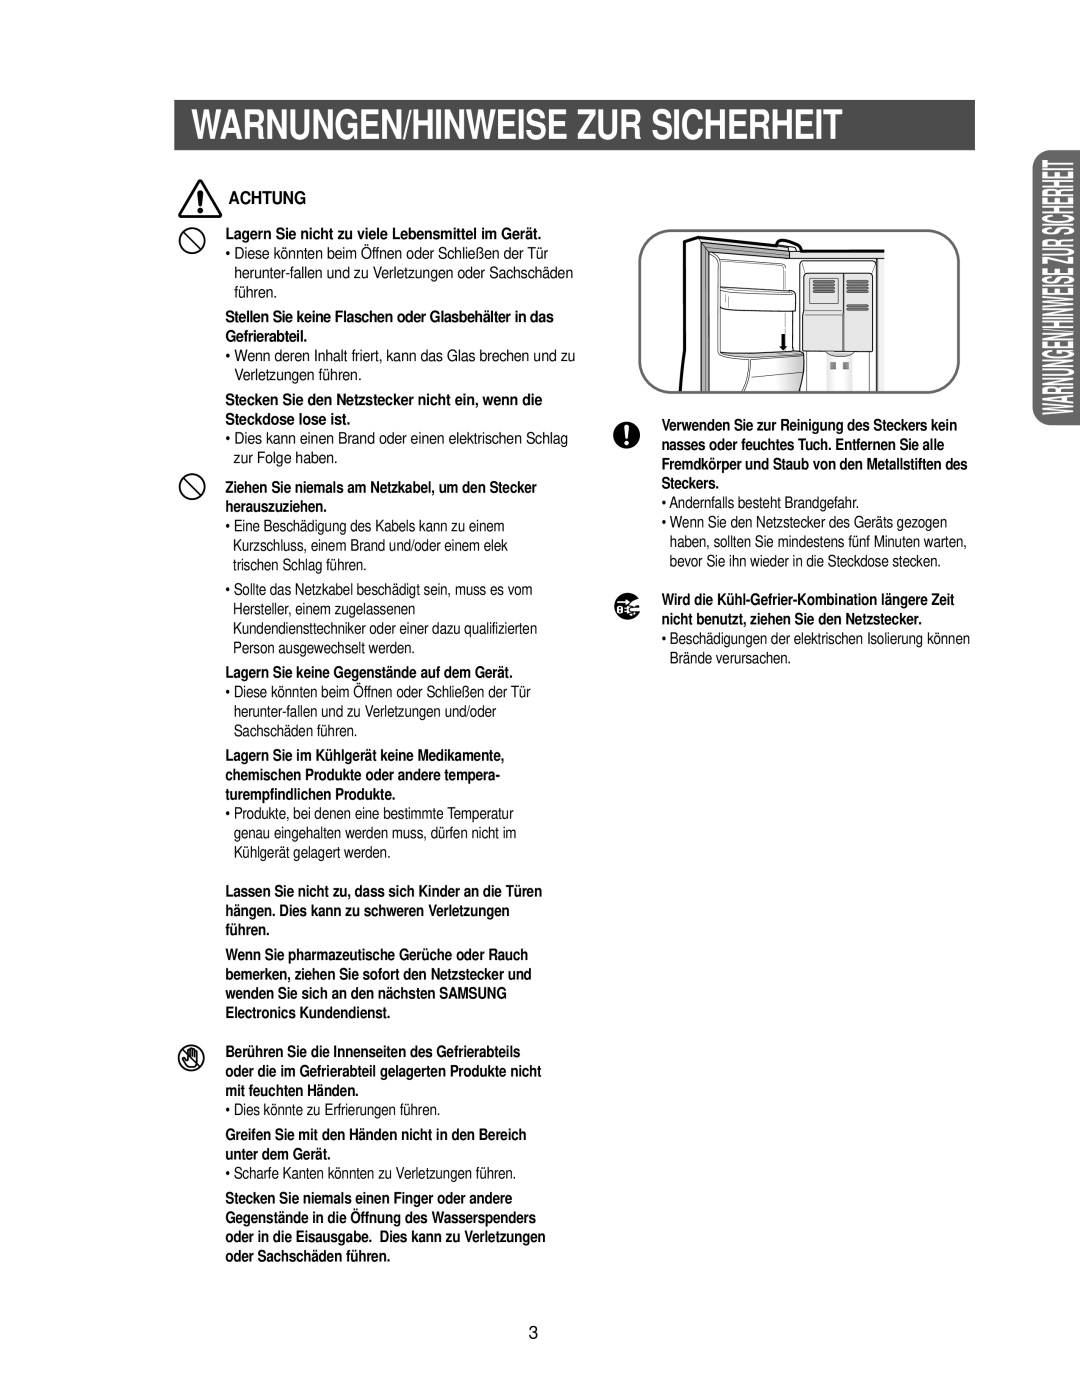 Samsung RS27KGRS1/ANU manual Warnungen/Hinweise Zur Sicherheit, Achtung, Lagern Sie nicht zu viele Lebensmittel im Gerät 